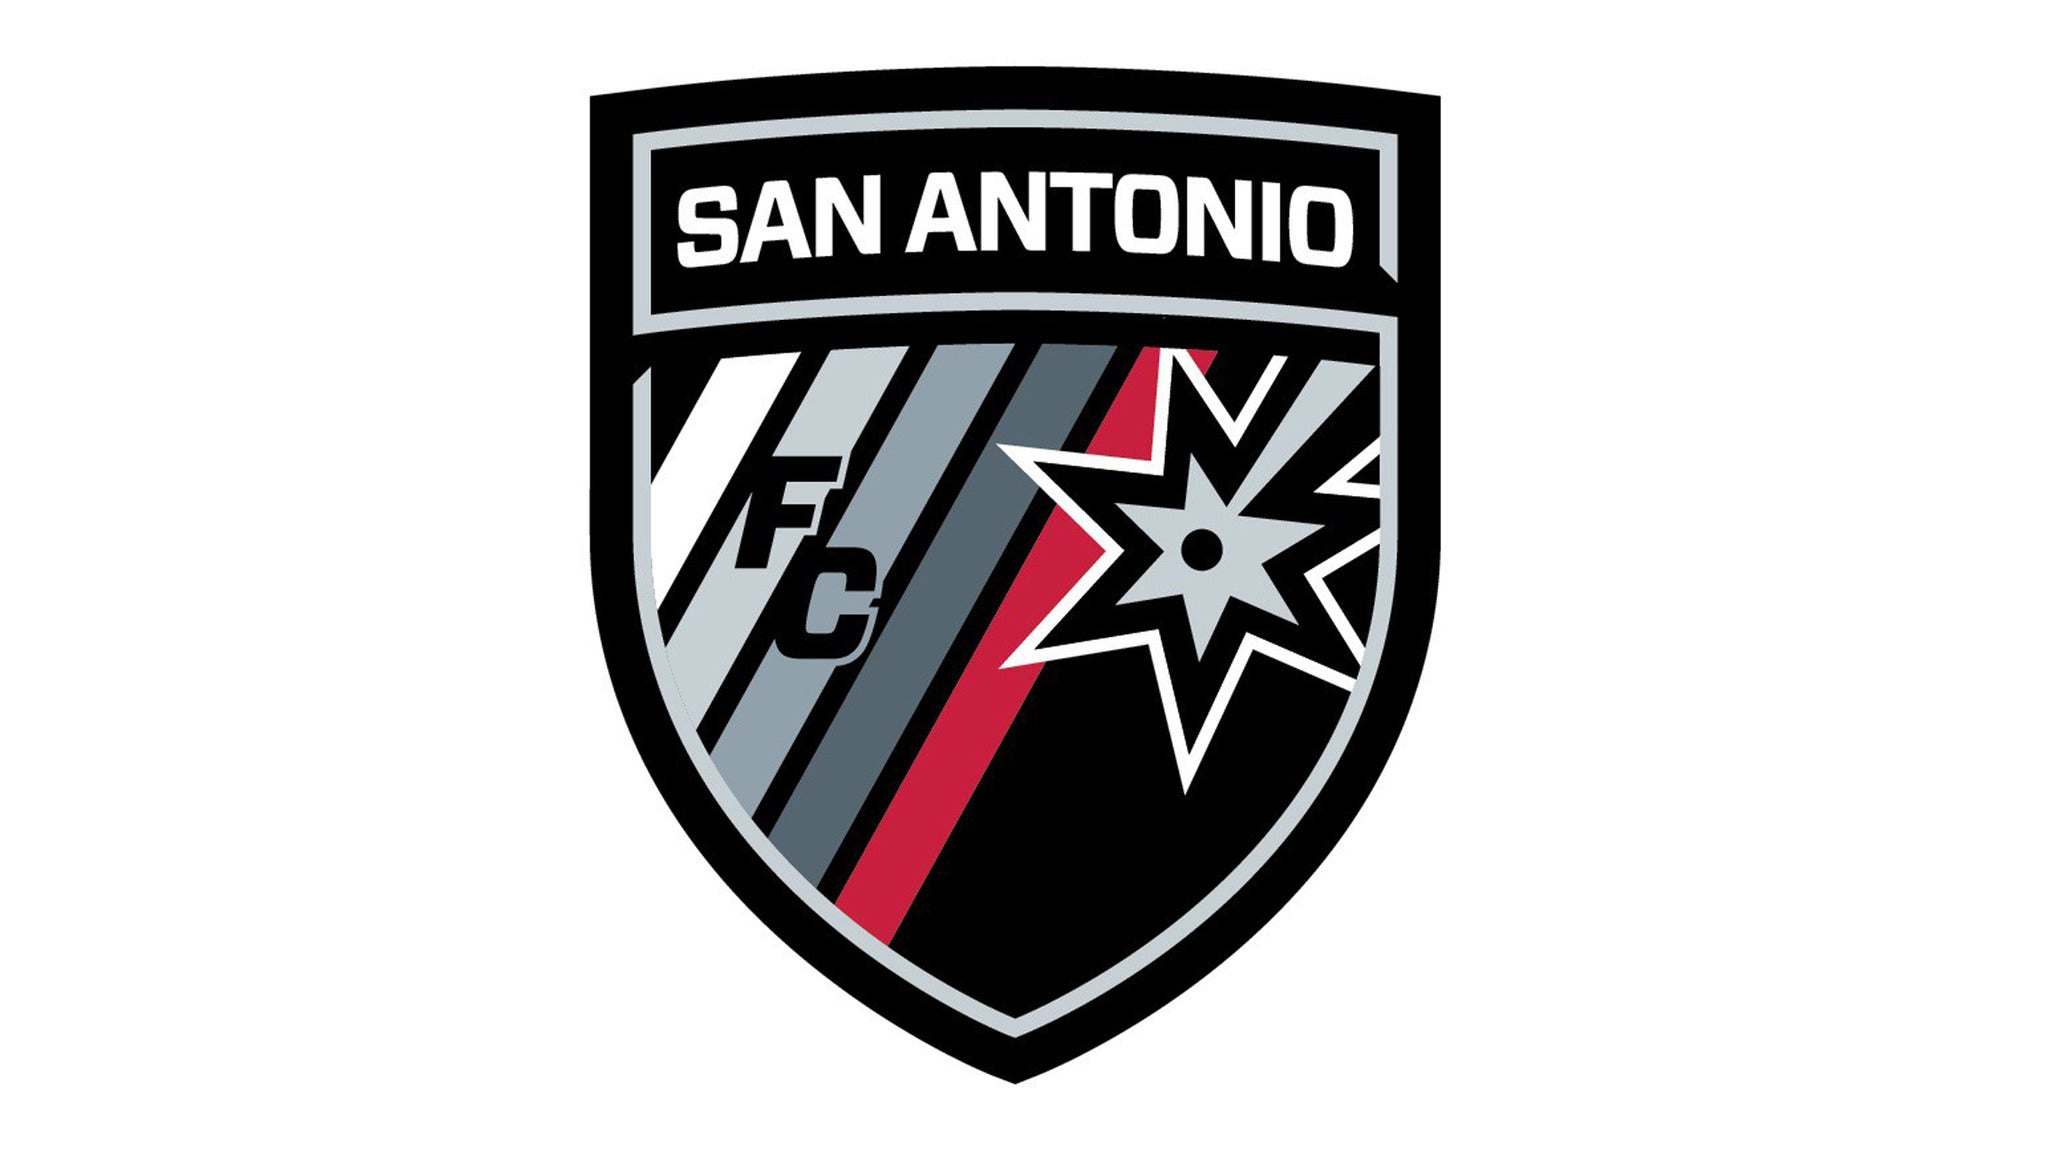 San Antonio FC vs. El Paso Locomotive in San Antonio promo photo for Fan Club presale offer code